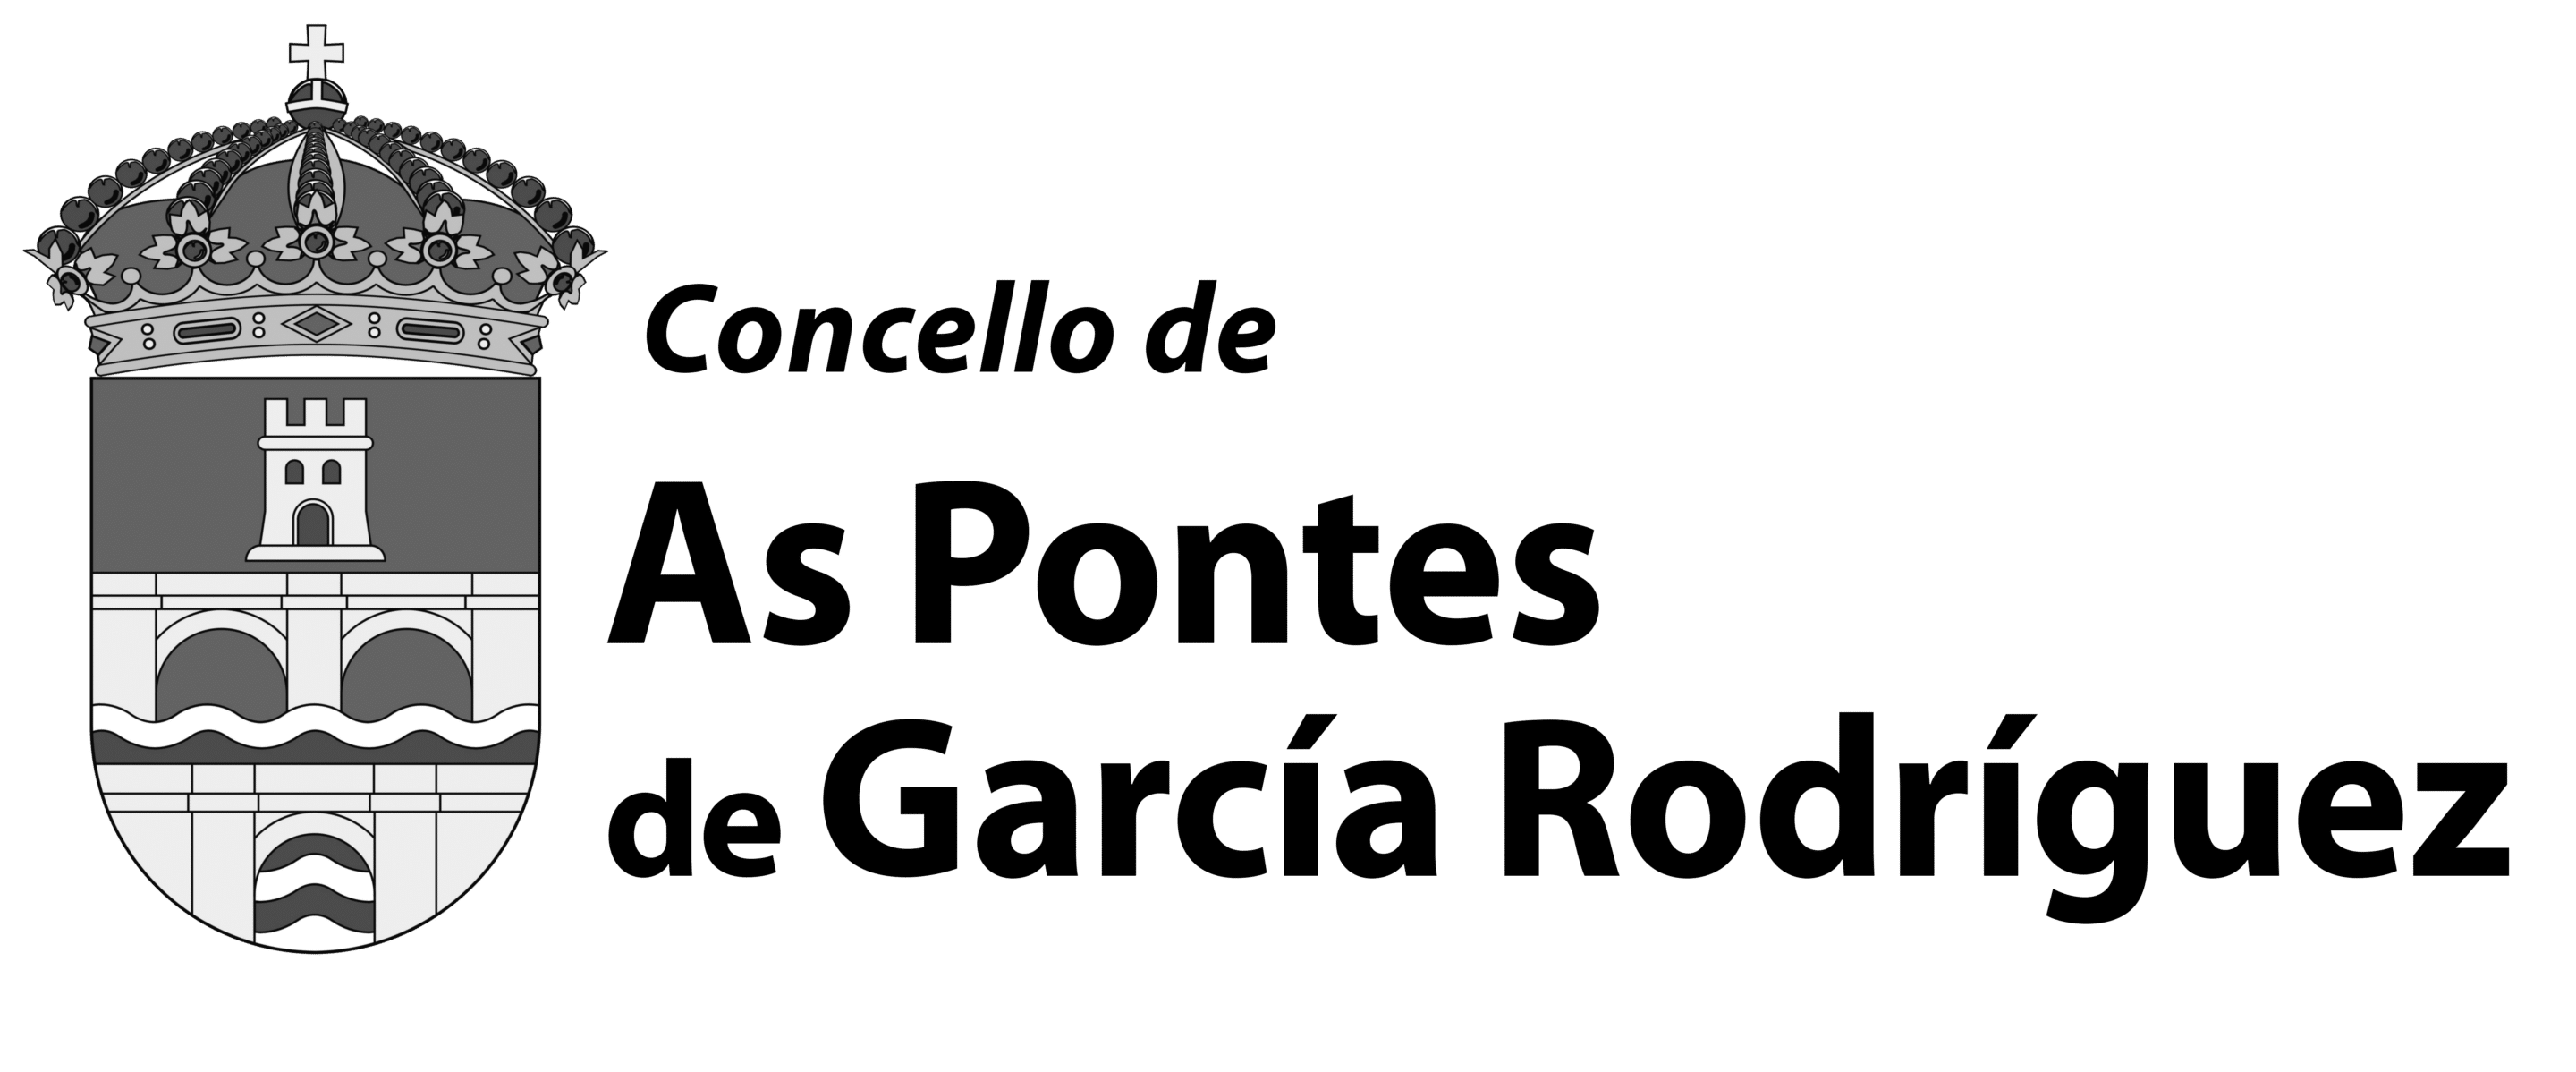 19.	Concello de As Pontes de García Rodríguez